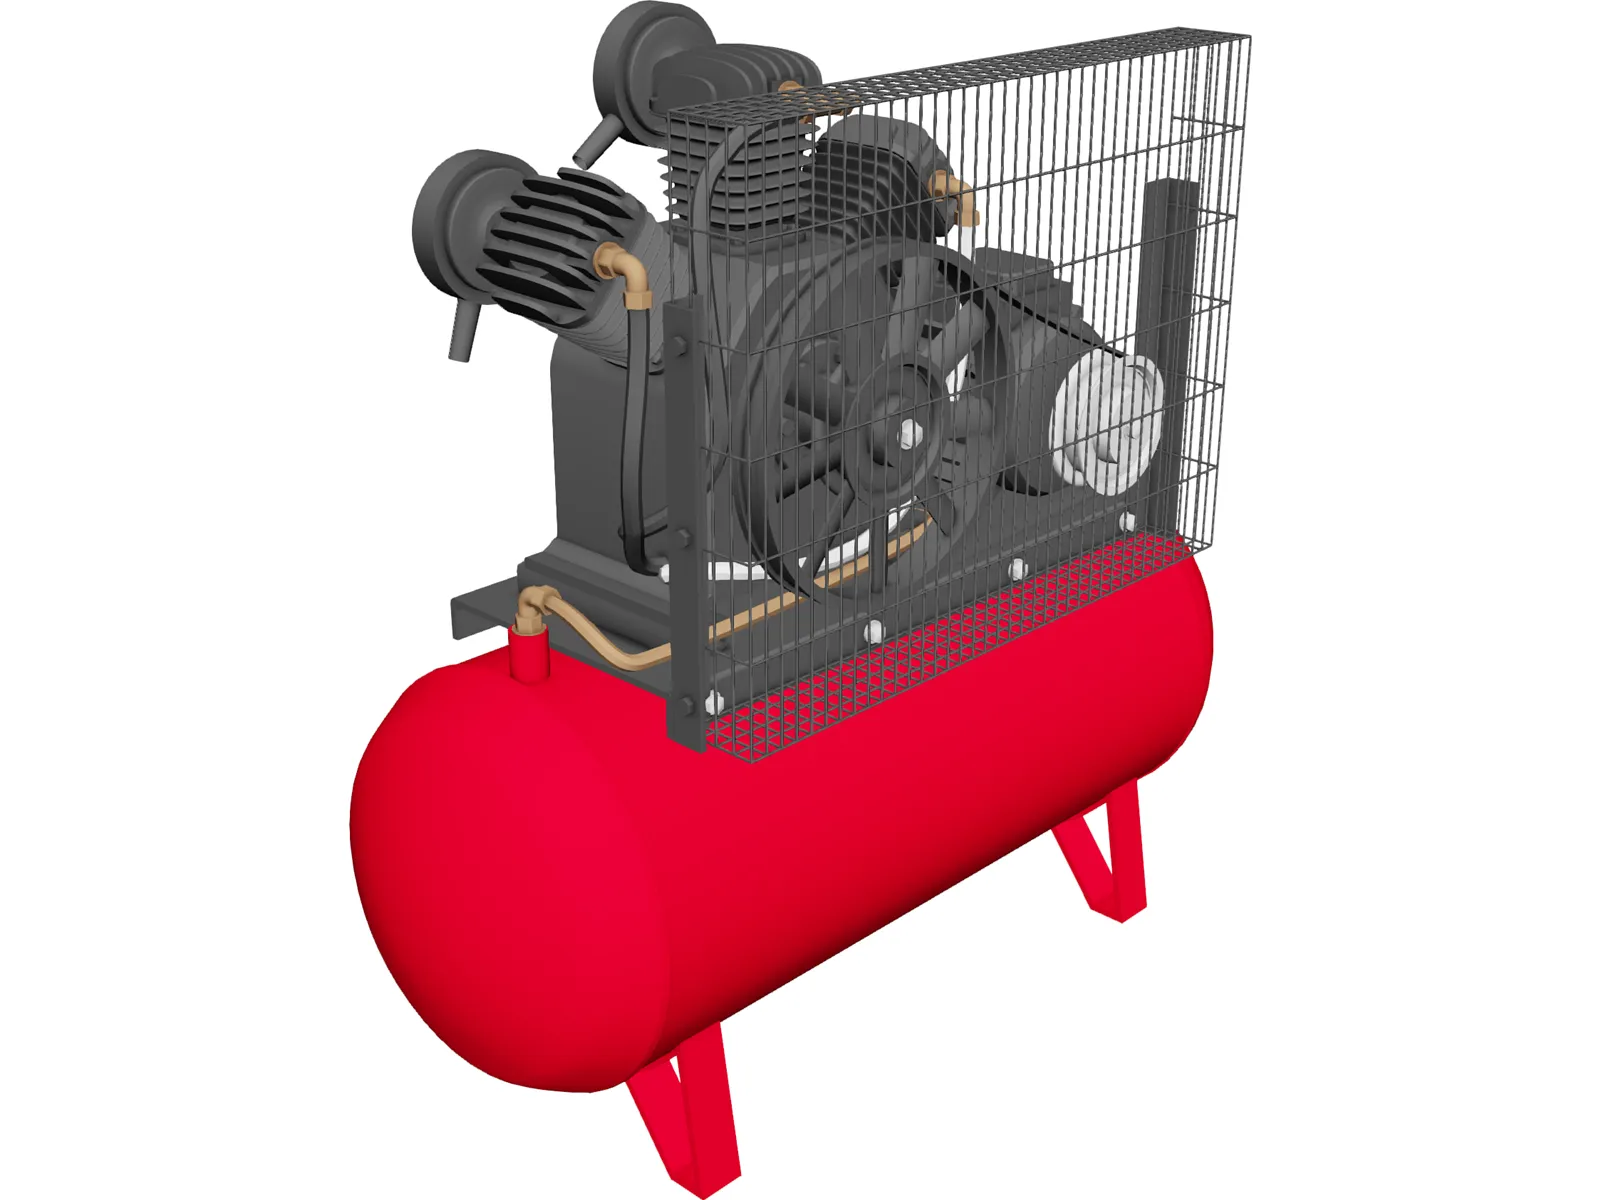 Compressor SENCO 3D Model